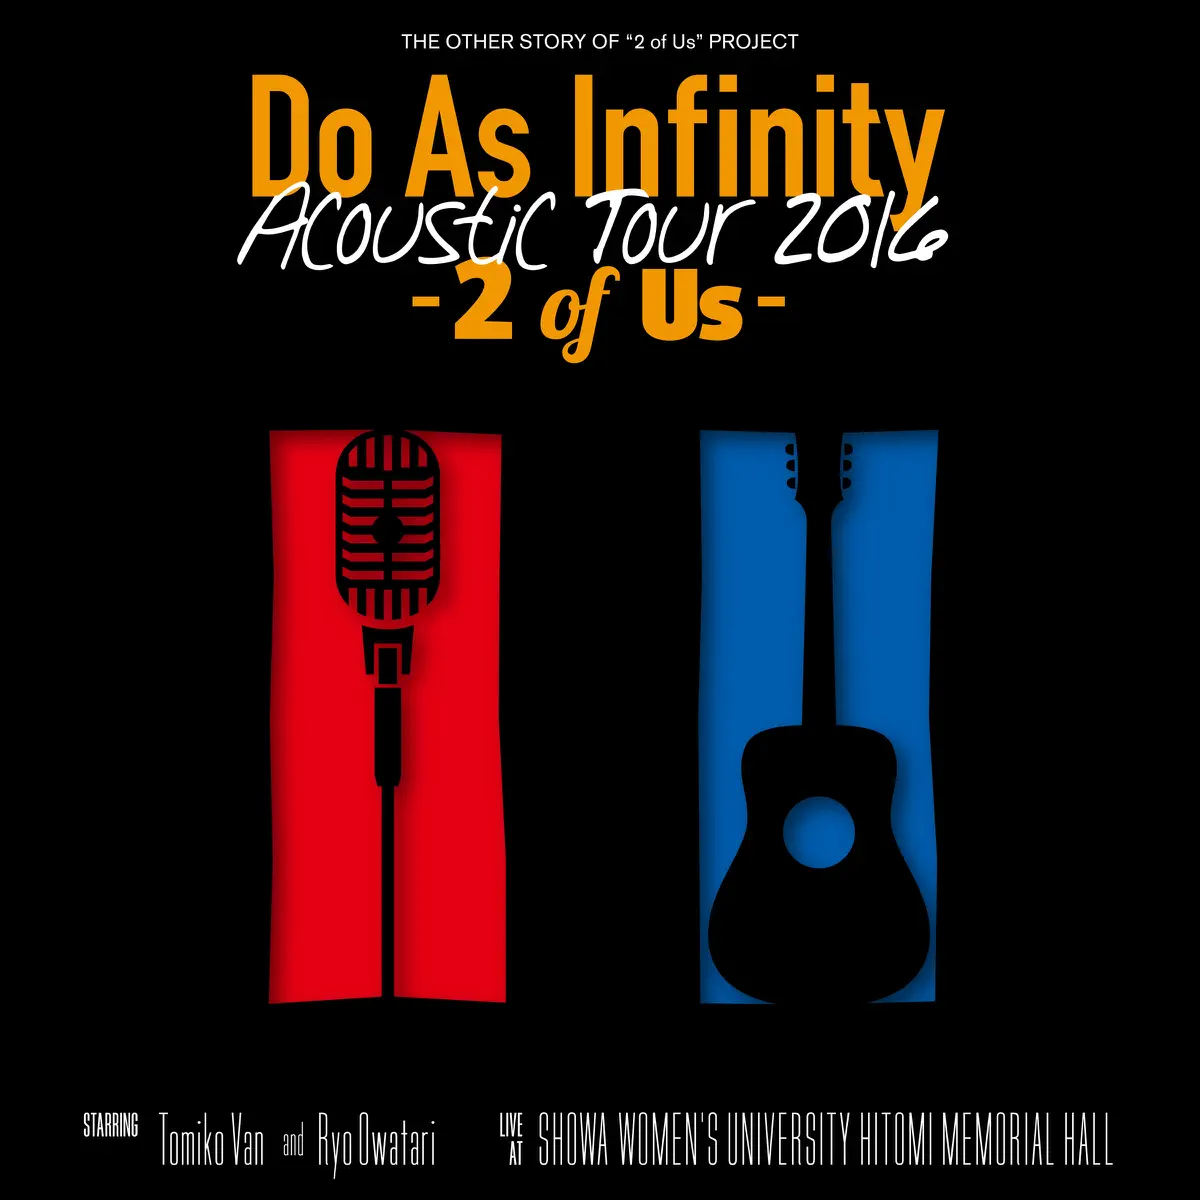 大无限乐团 Do As Infinity - Do As Infinity Acoustic Tour 2016 -2 of Us- (2016) [iTunes Plus AAC M4A]-新房子